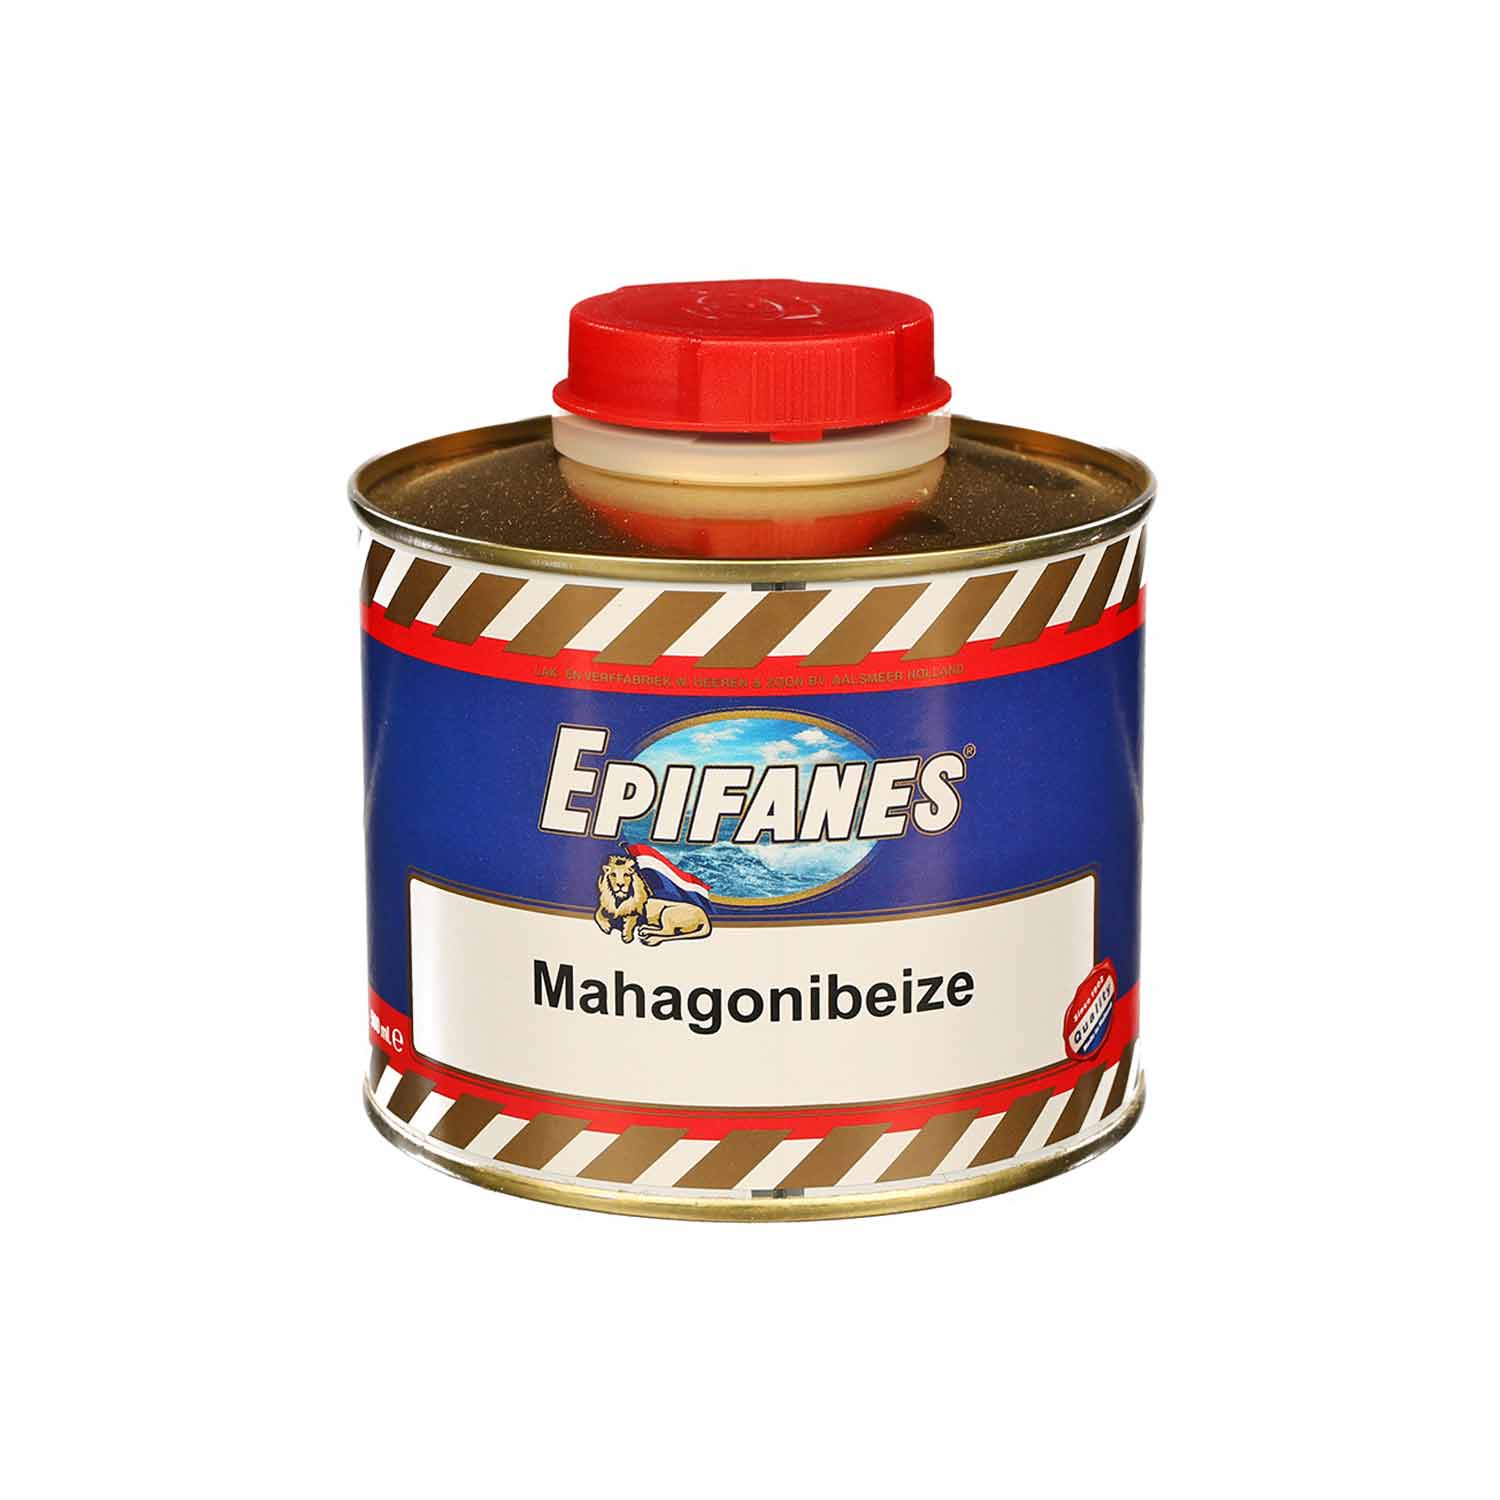 Epifanes Mahagonibeize